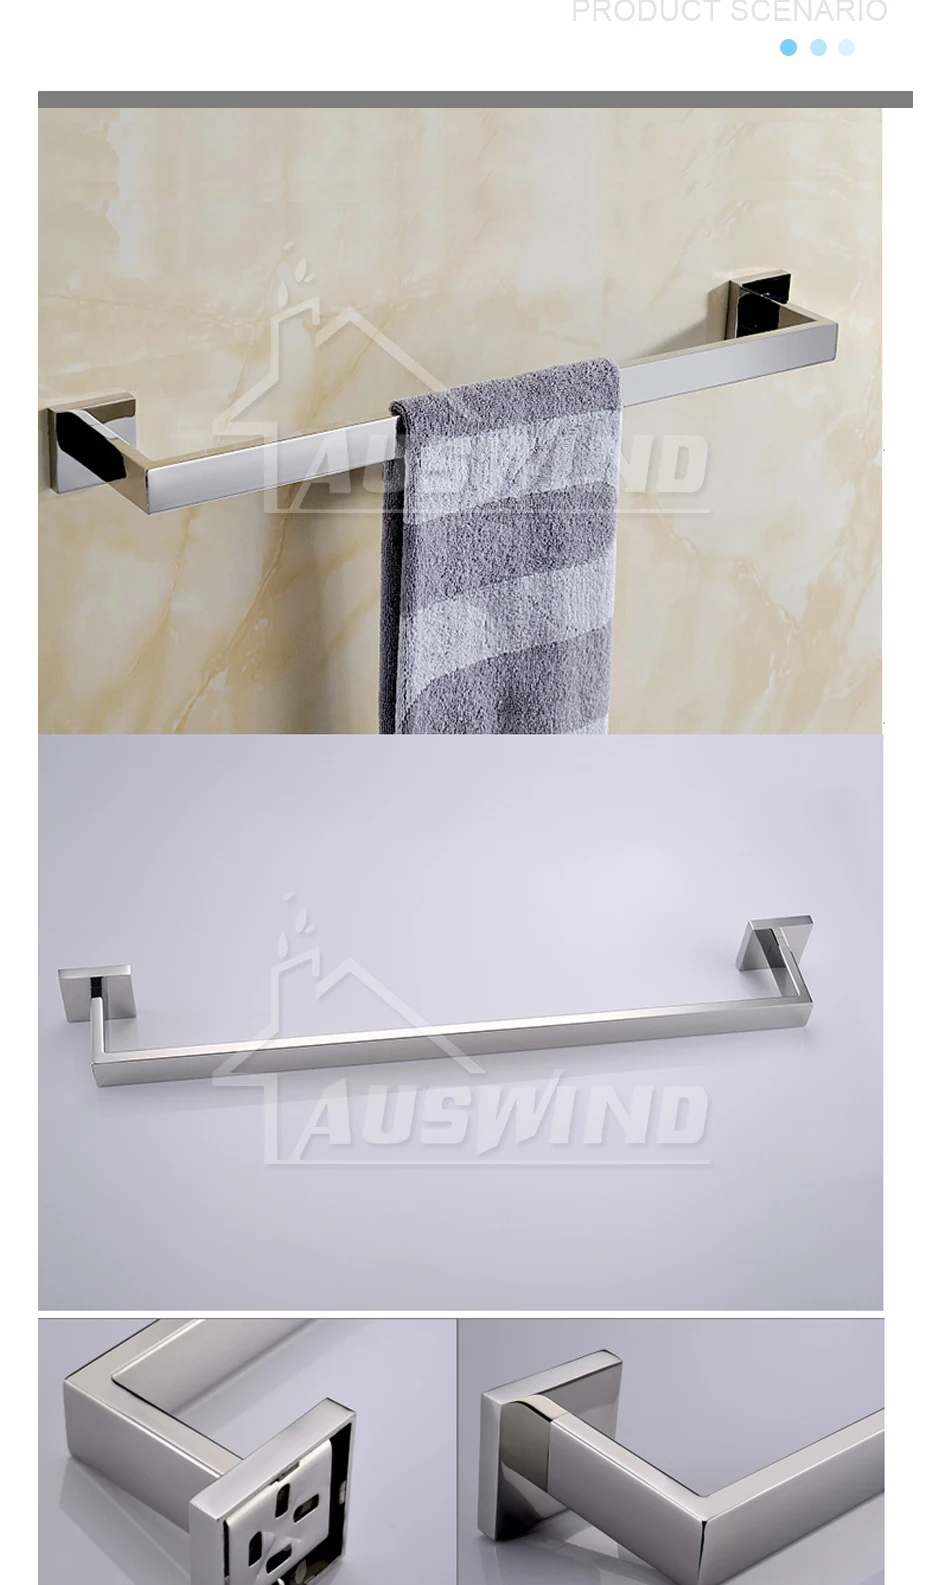 SUS 304 хромированная отделка Аксессуары для ванной комнаты из нержавеющей стали набор аксессуаров для ванной комнаты настенный 4 предмета включает в себя декор для ванной комнаты